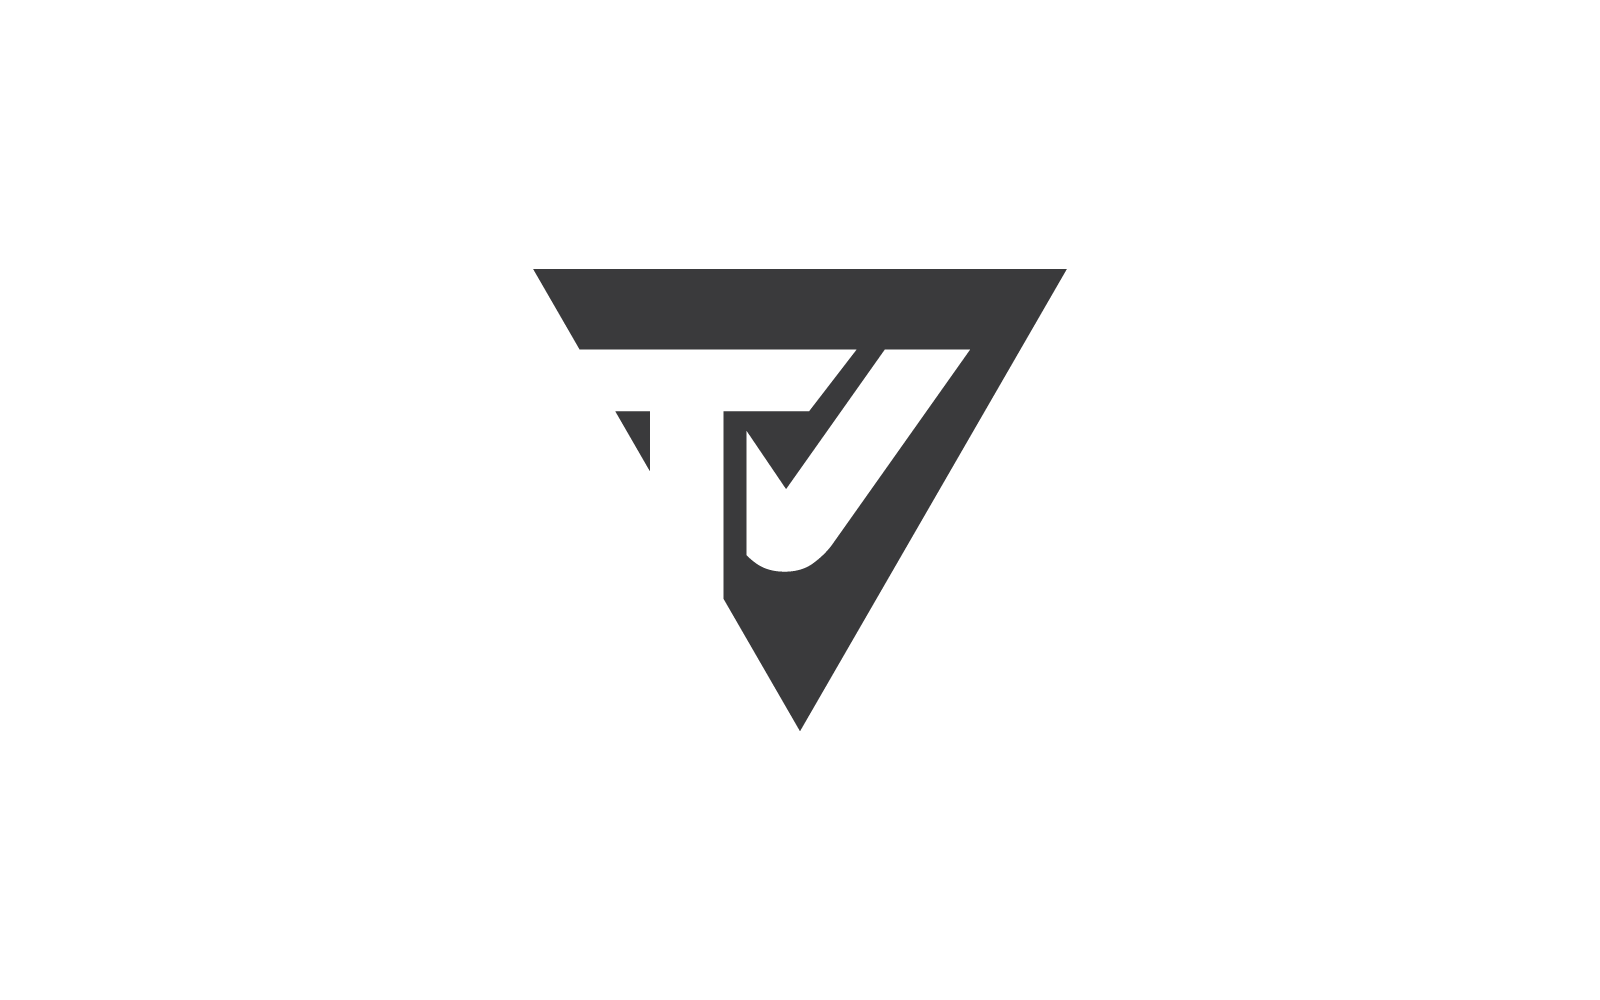 TV logo vector design template